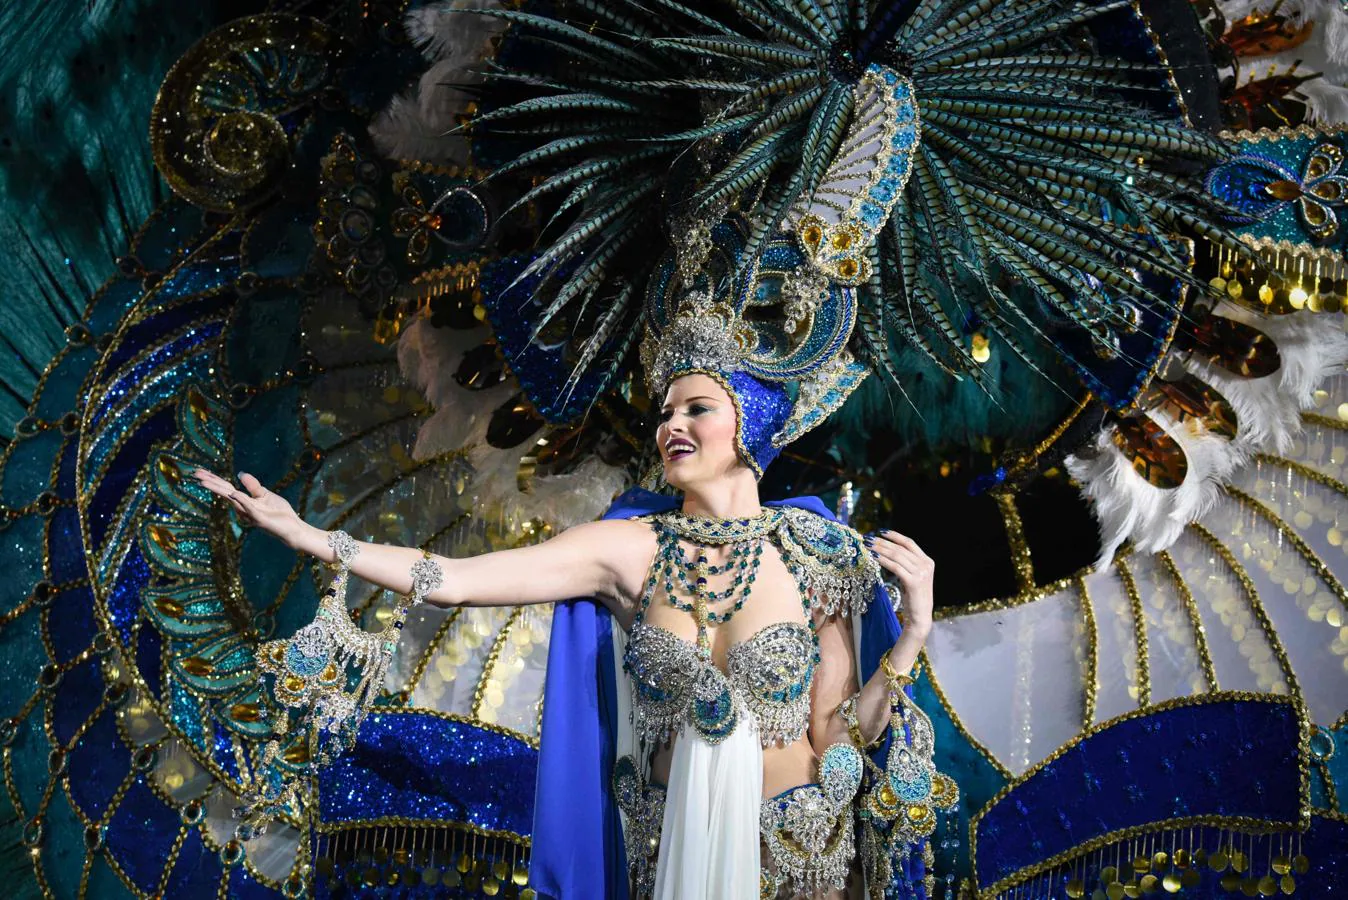 La candidata, Violetta Tyurkina, con la fantasía «Bóveda Celeste», durante su participación en la gala de elección de la Reina del Carnaval de Santa Cruz de Tenerife